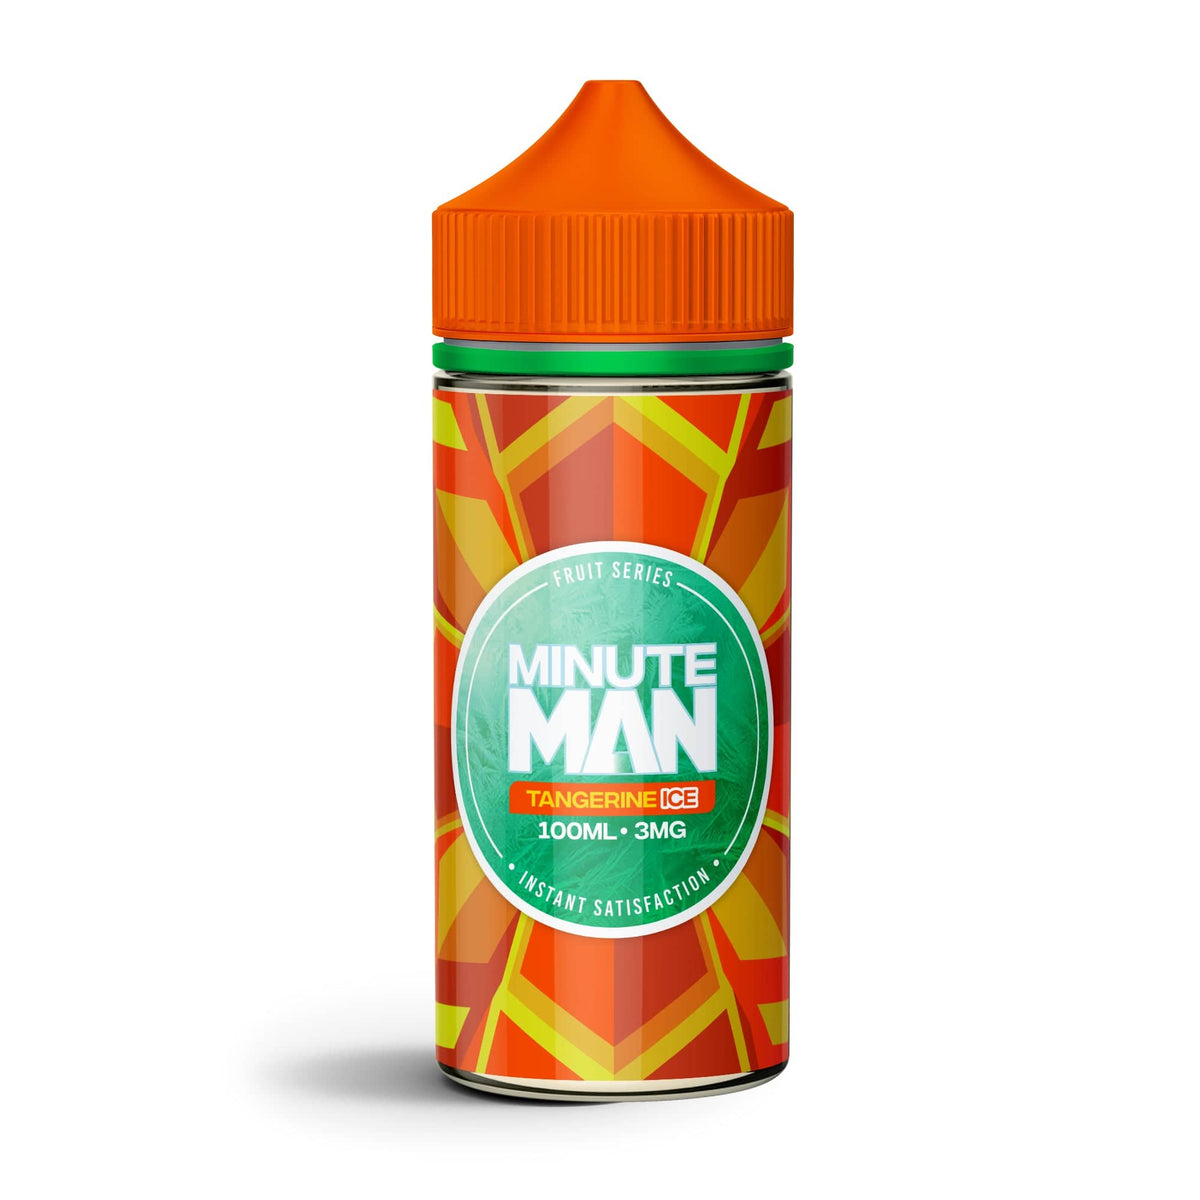 Minute Man Juice Minute Man Tangerine Ice 100ml Vape Juice